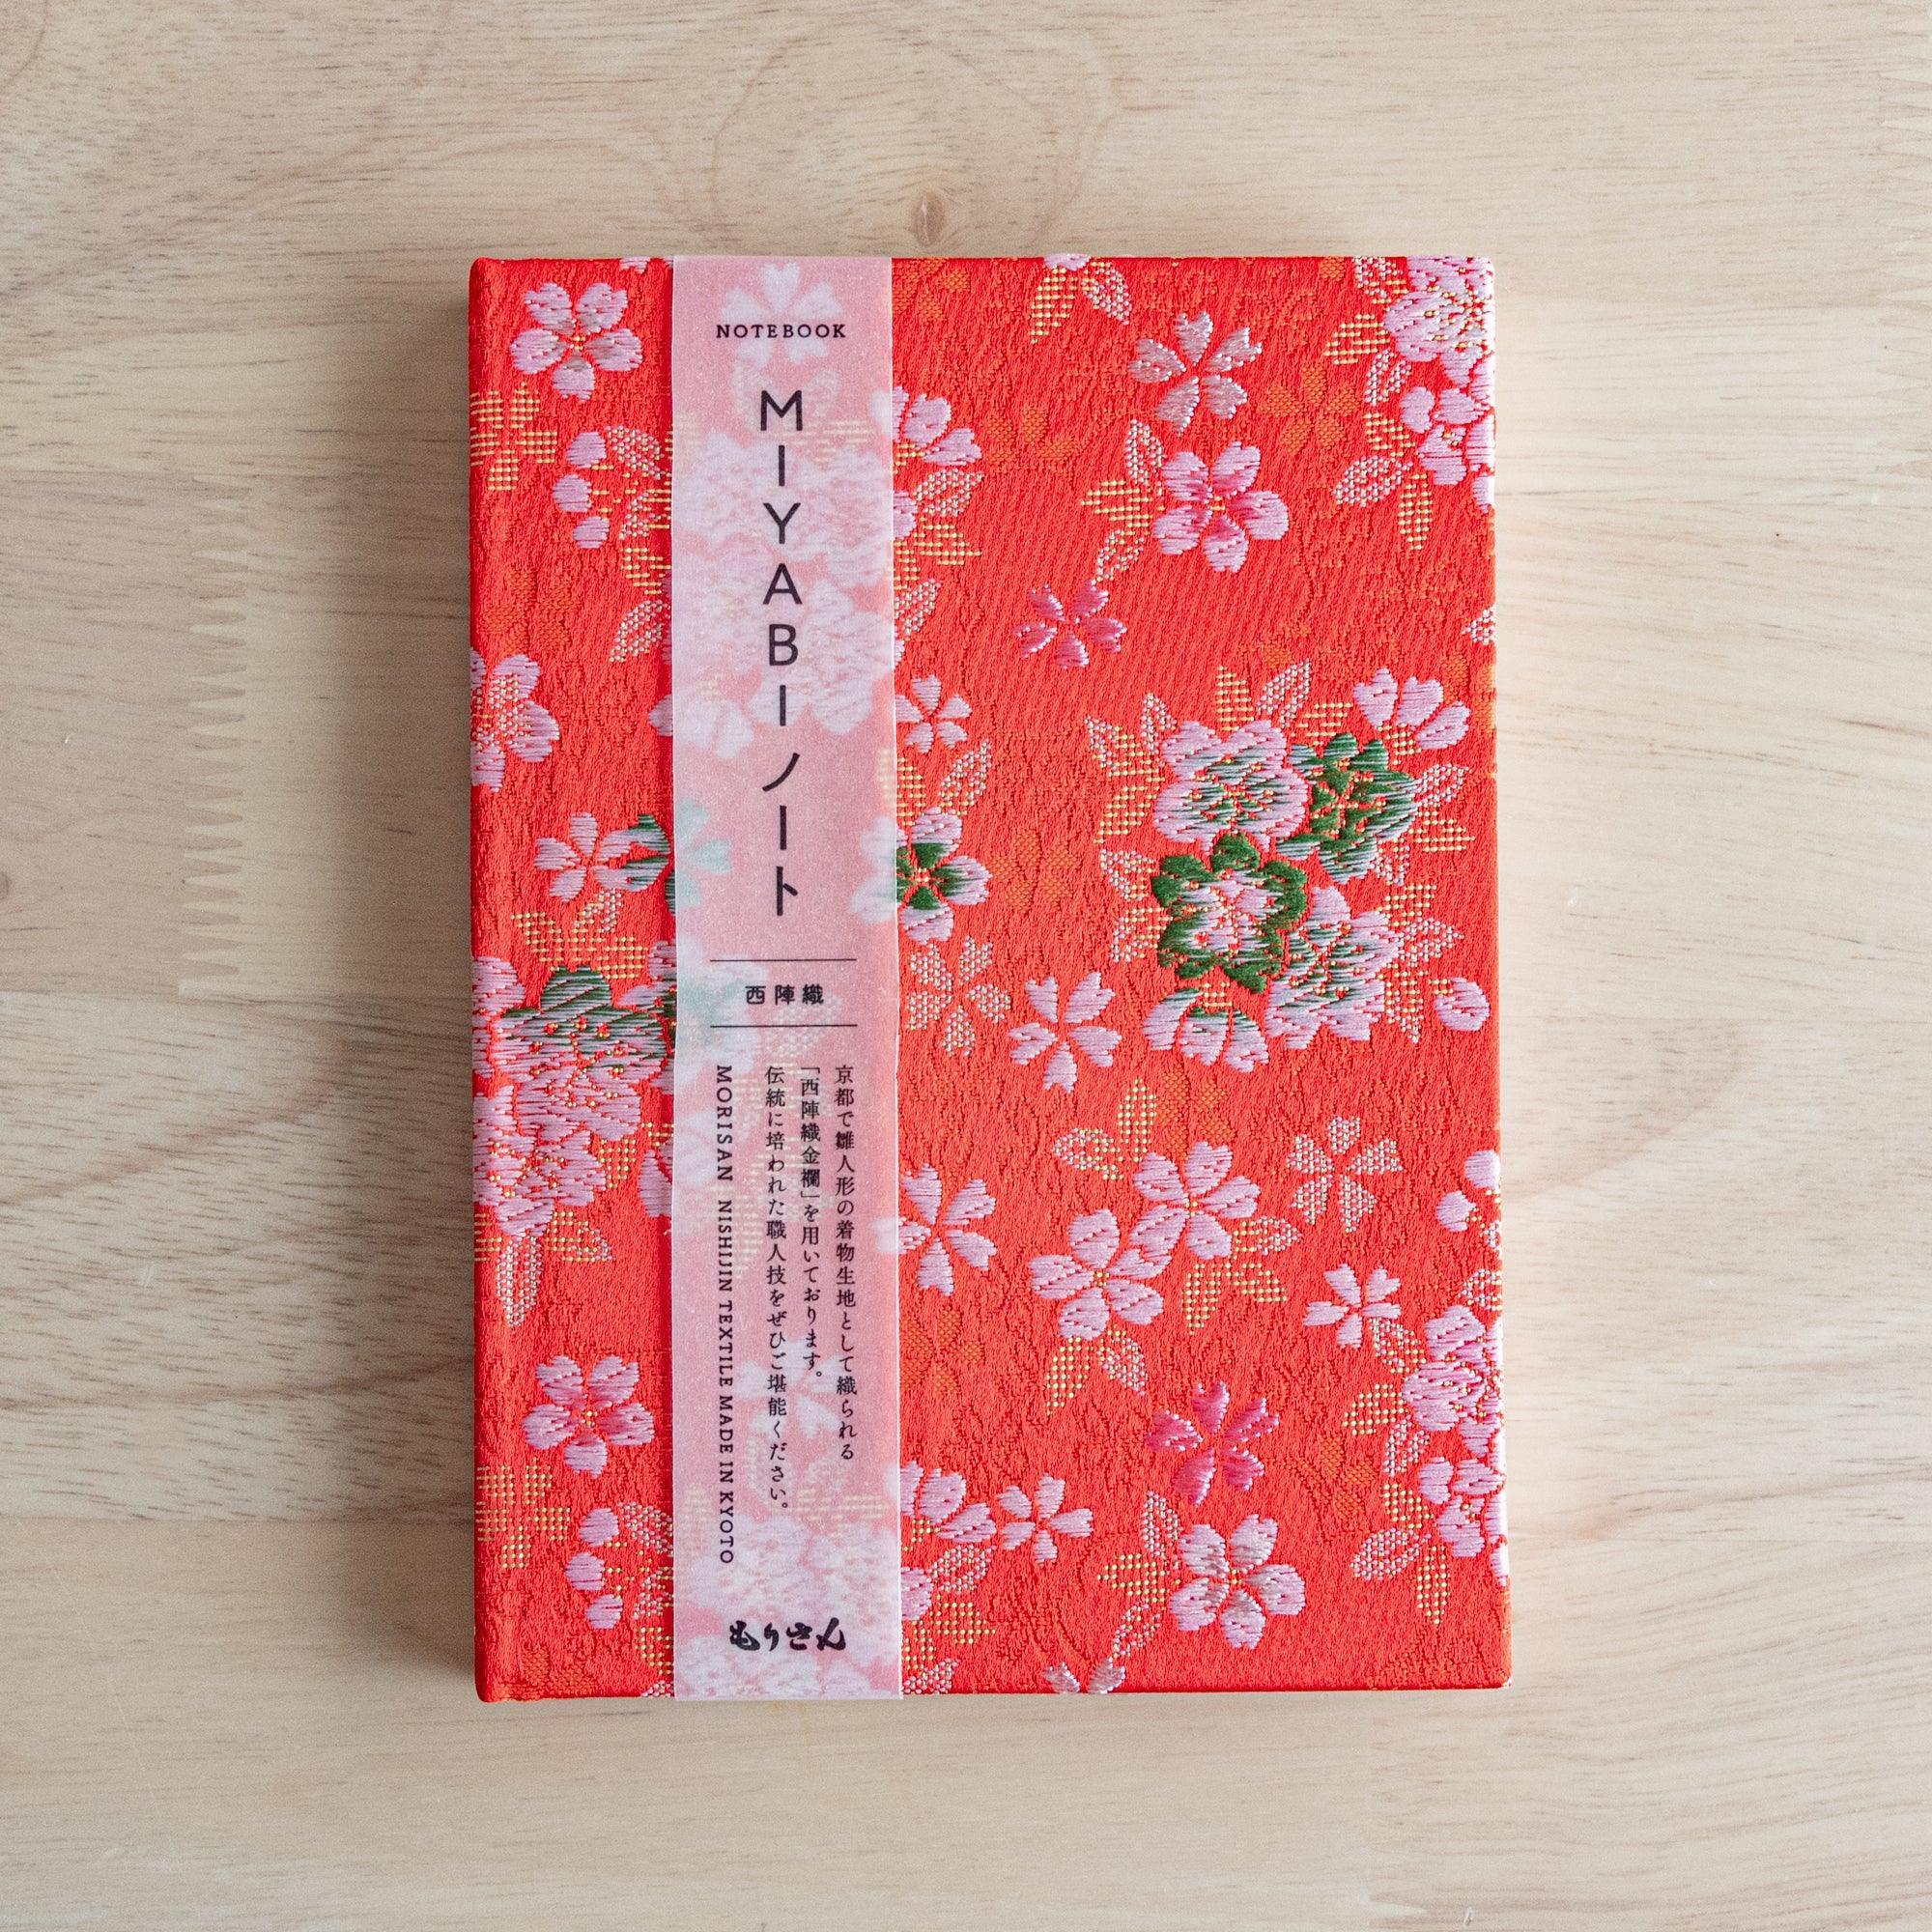 nishijin-textile-sakura-ensemble-notebook-or-b6-morisan-komorebi-stationery-3 - Komorebi Stationery